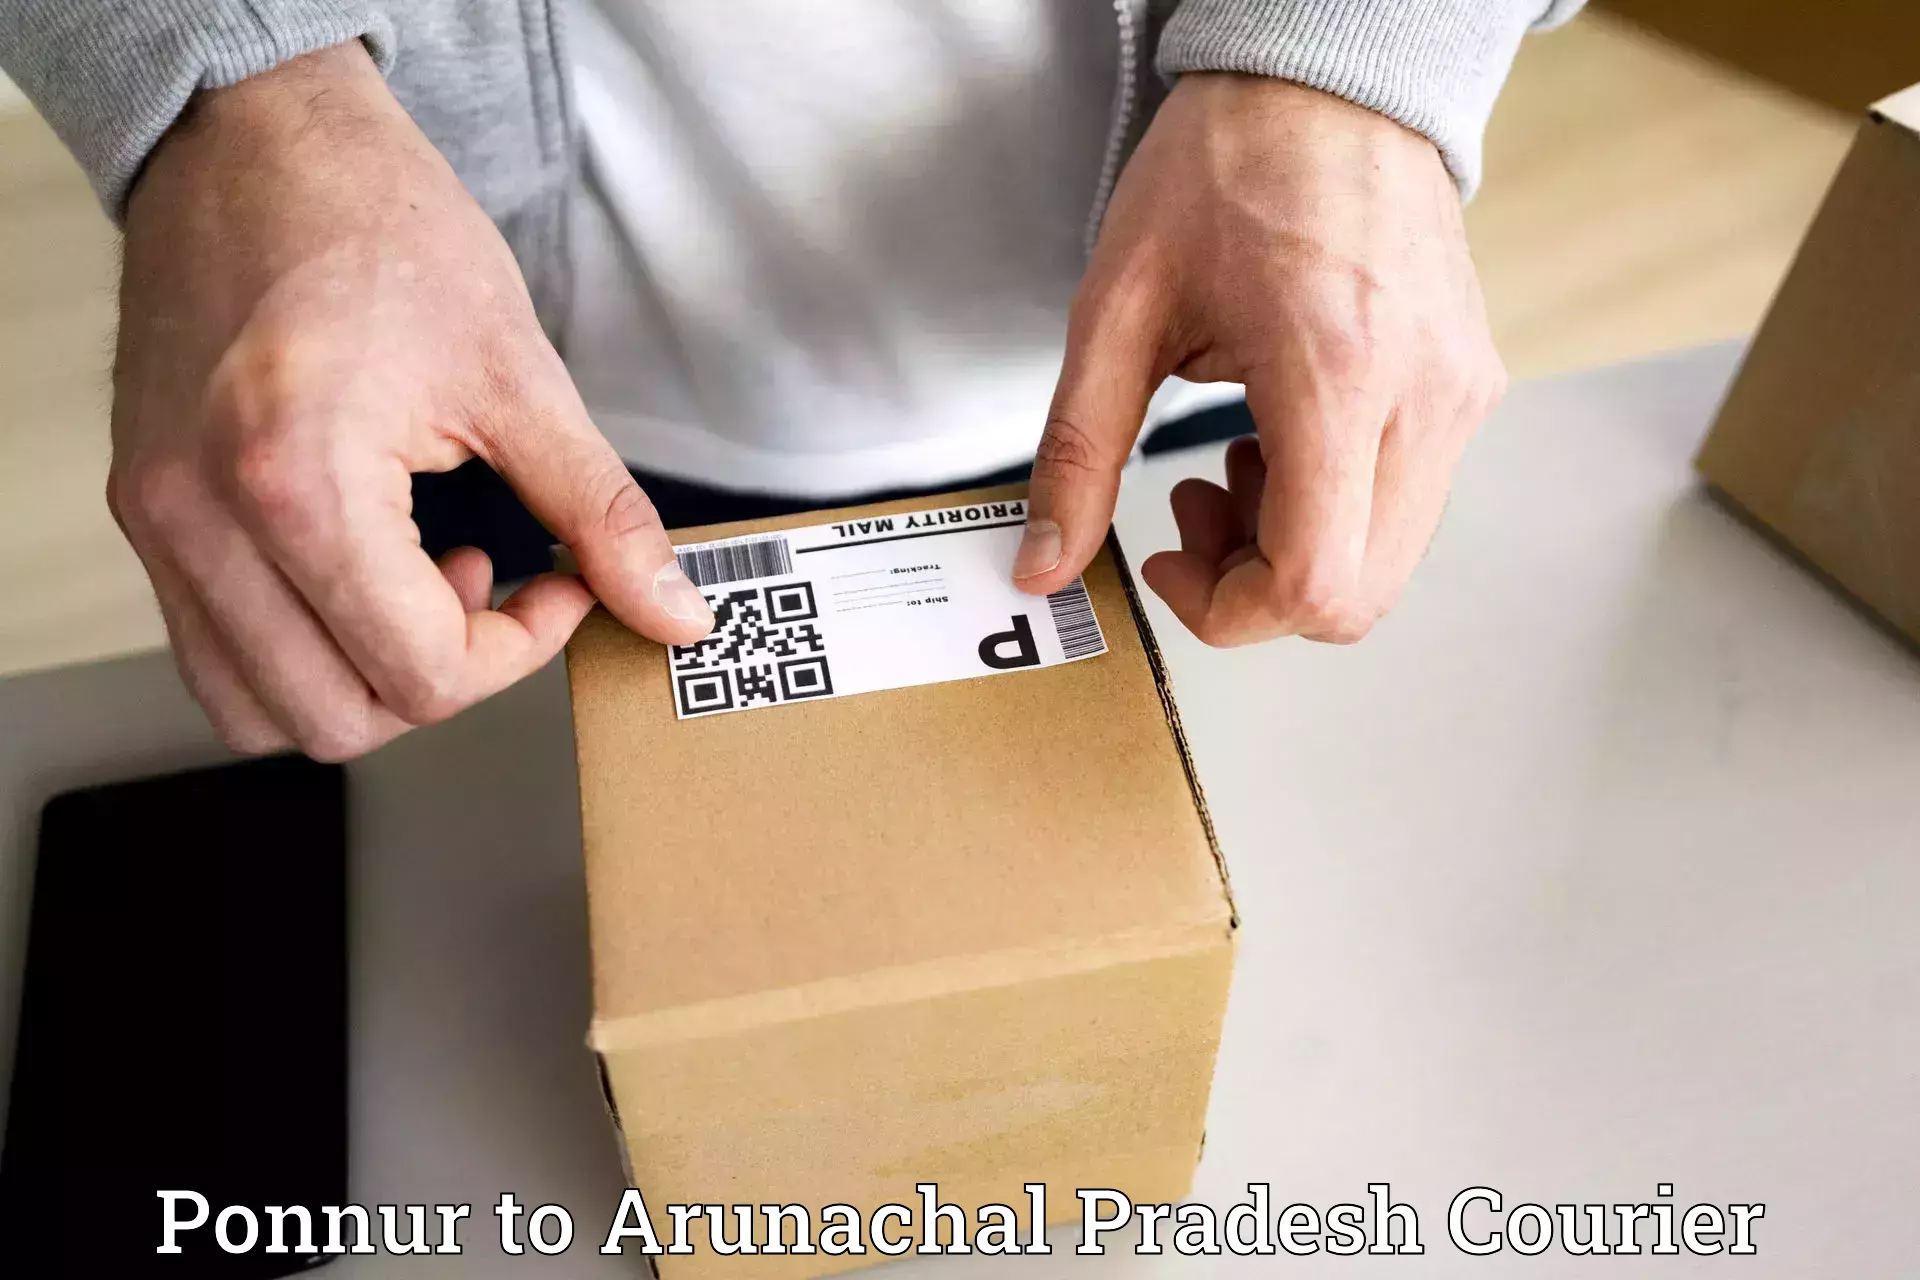 Quality courier services Ponnur to Arunachal Pradesh